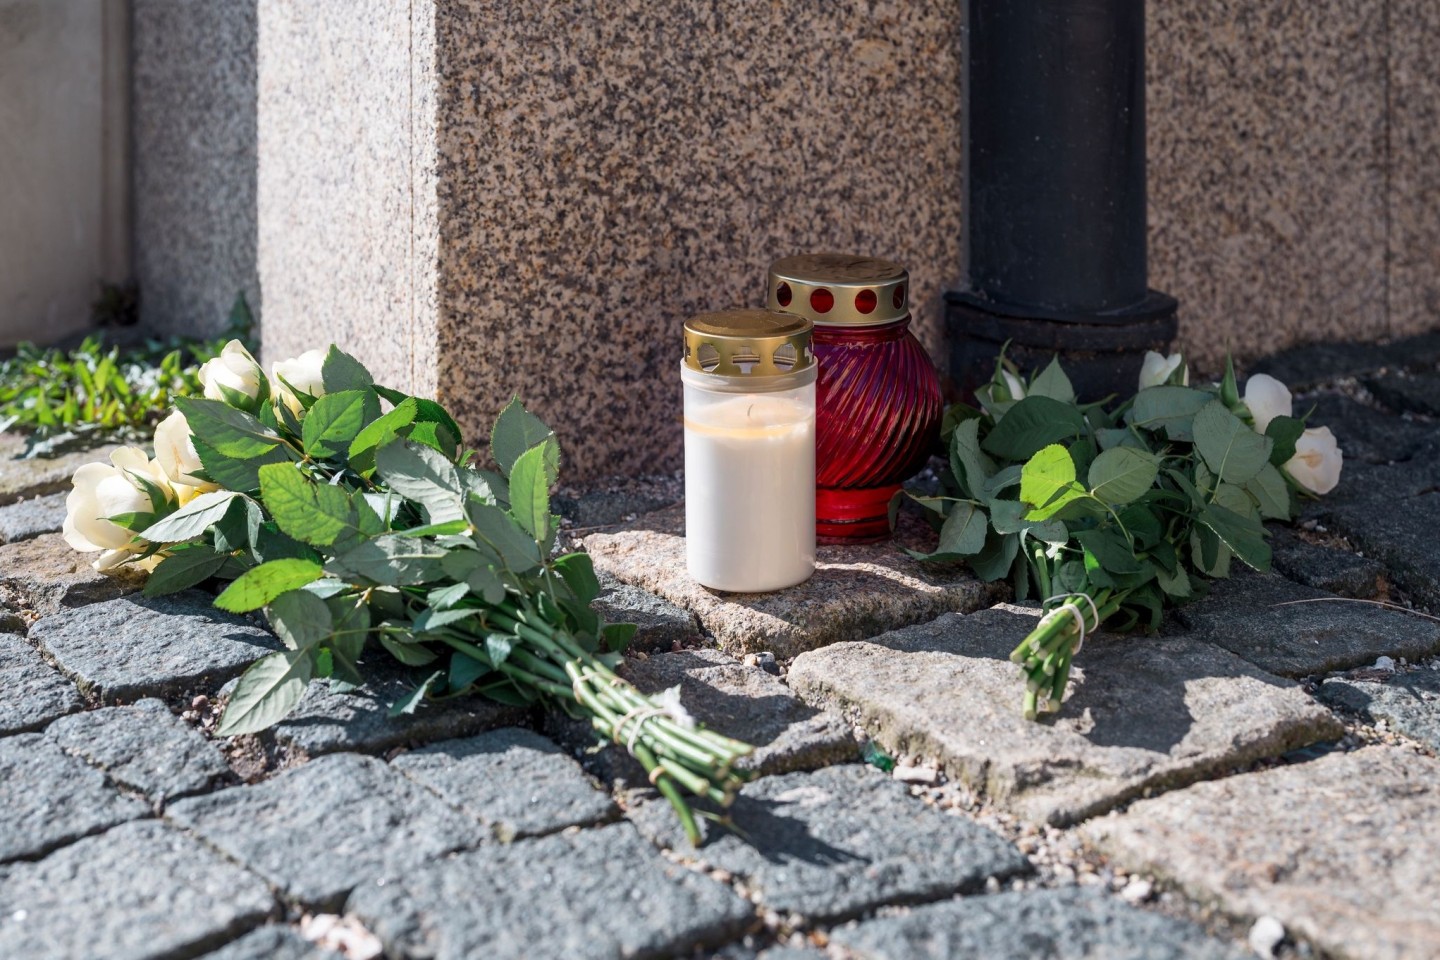 An der Straßenecke zur Zufahrt zum Kinder- und Jugendhilfezentrum, in dem eine Zehnjährige tot aufgefunden wurde, liegen weiße Rosen und Grablichter auf dem Gehweg.